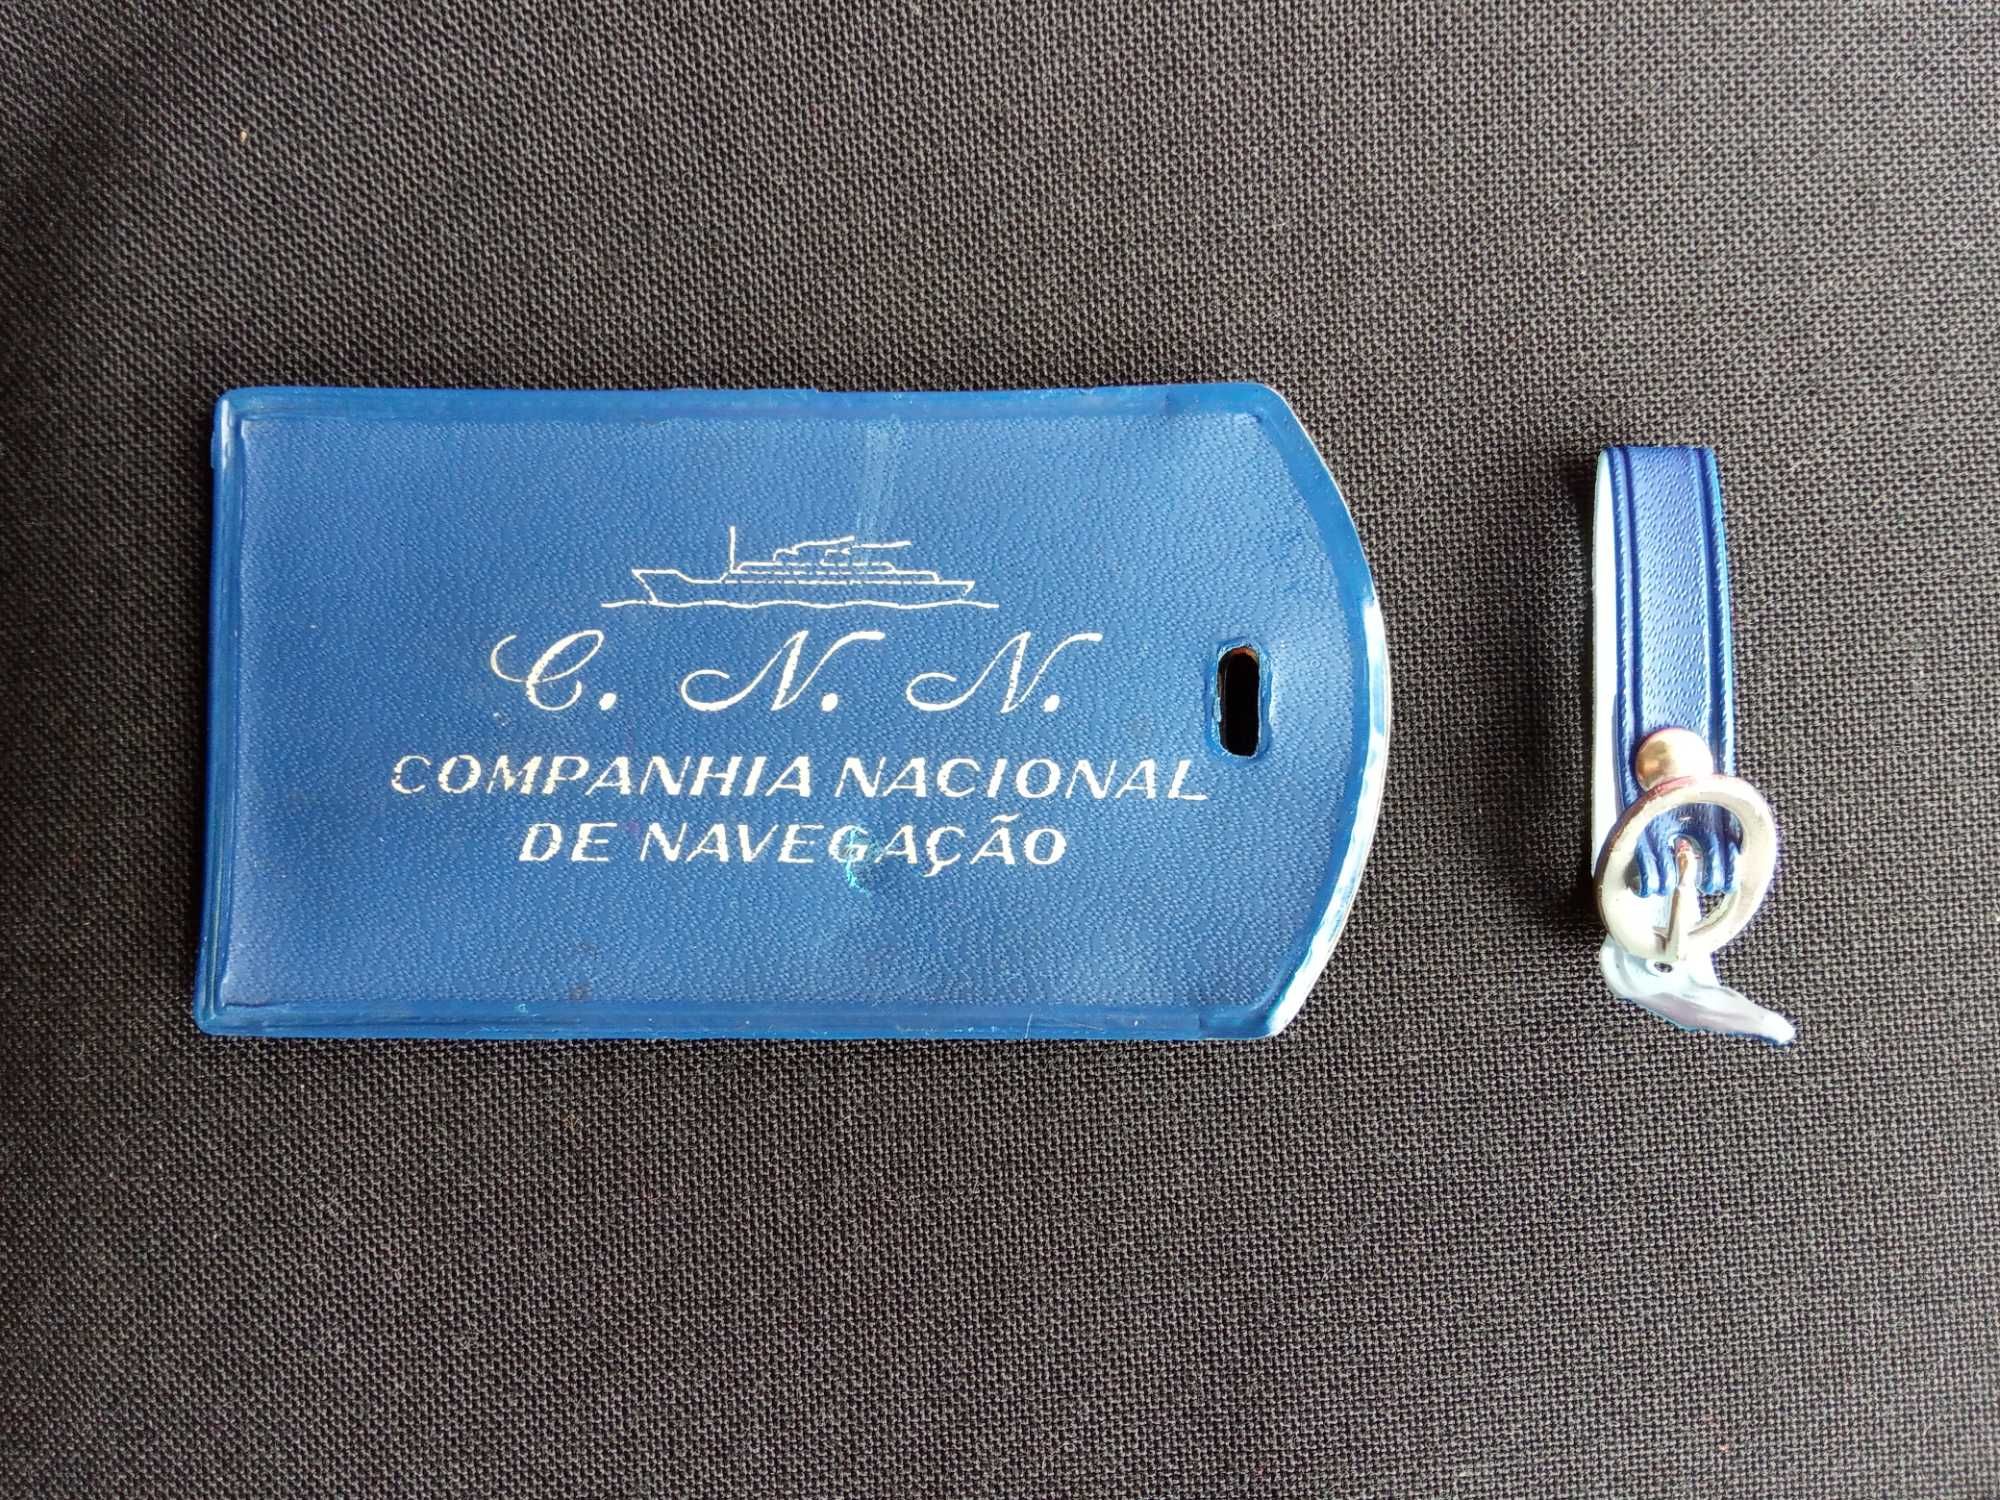 Companhia Nacional de Navegação - prato e etiqueta de bagagem anos 60